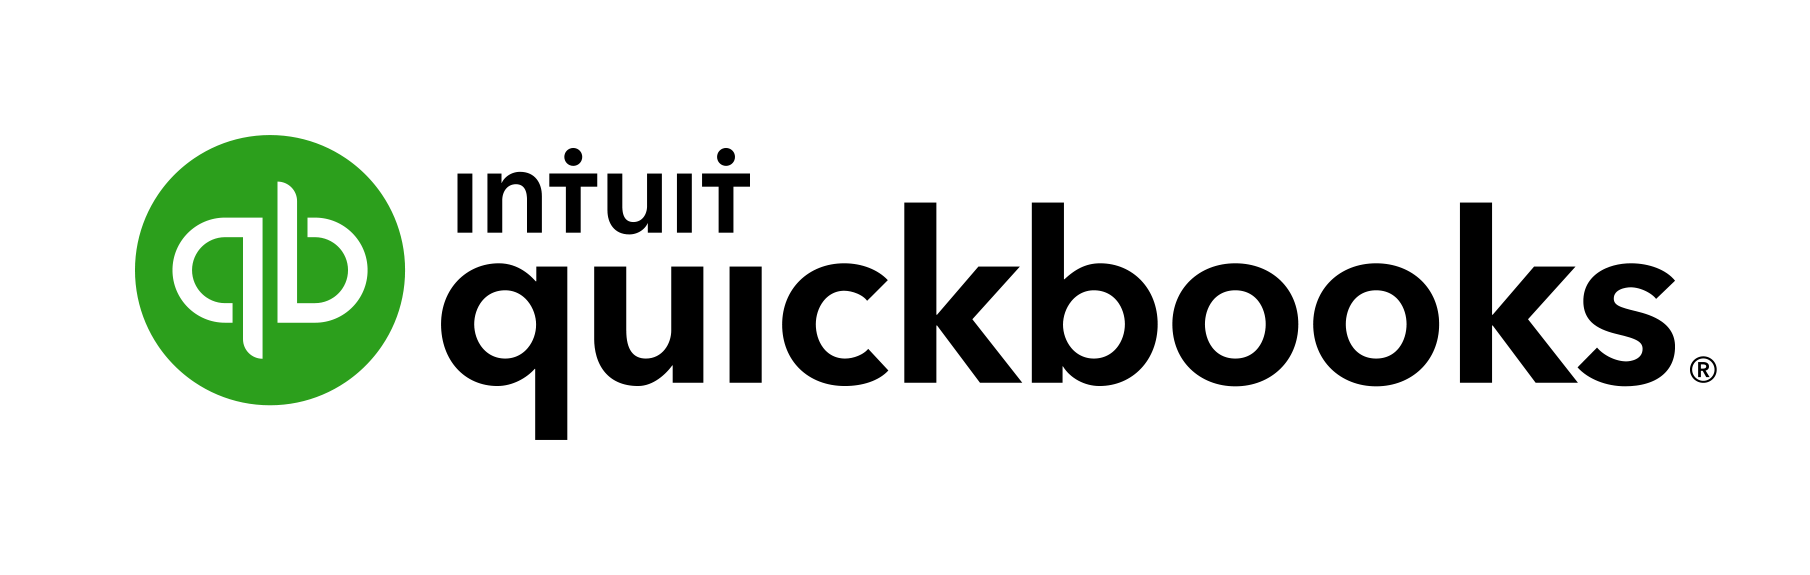 logo-intuit-quickbooks-logo